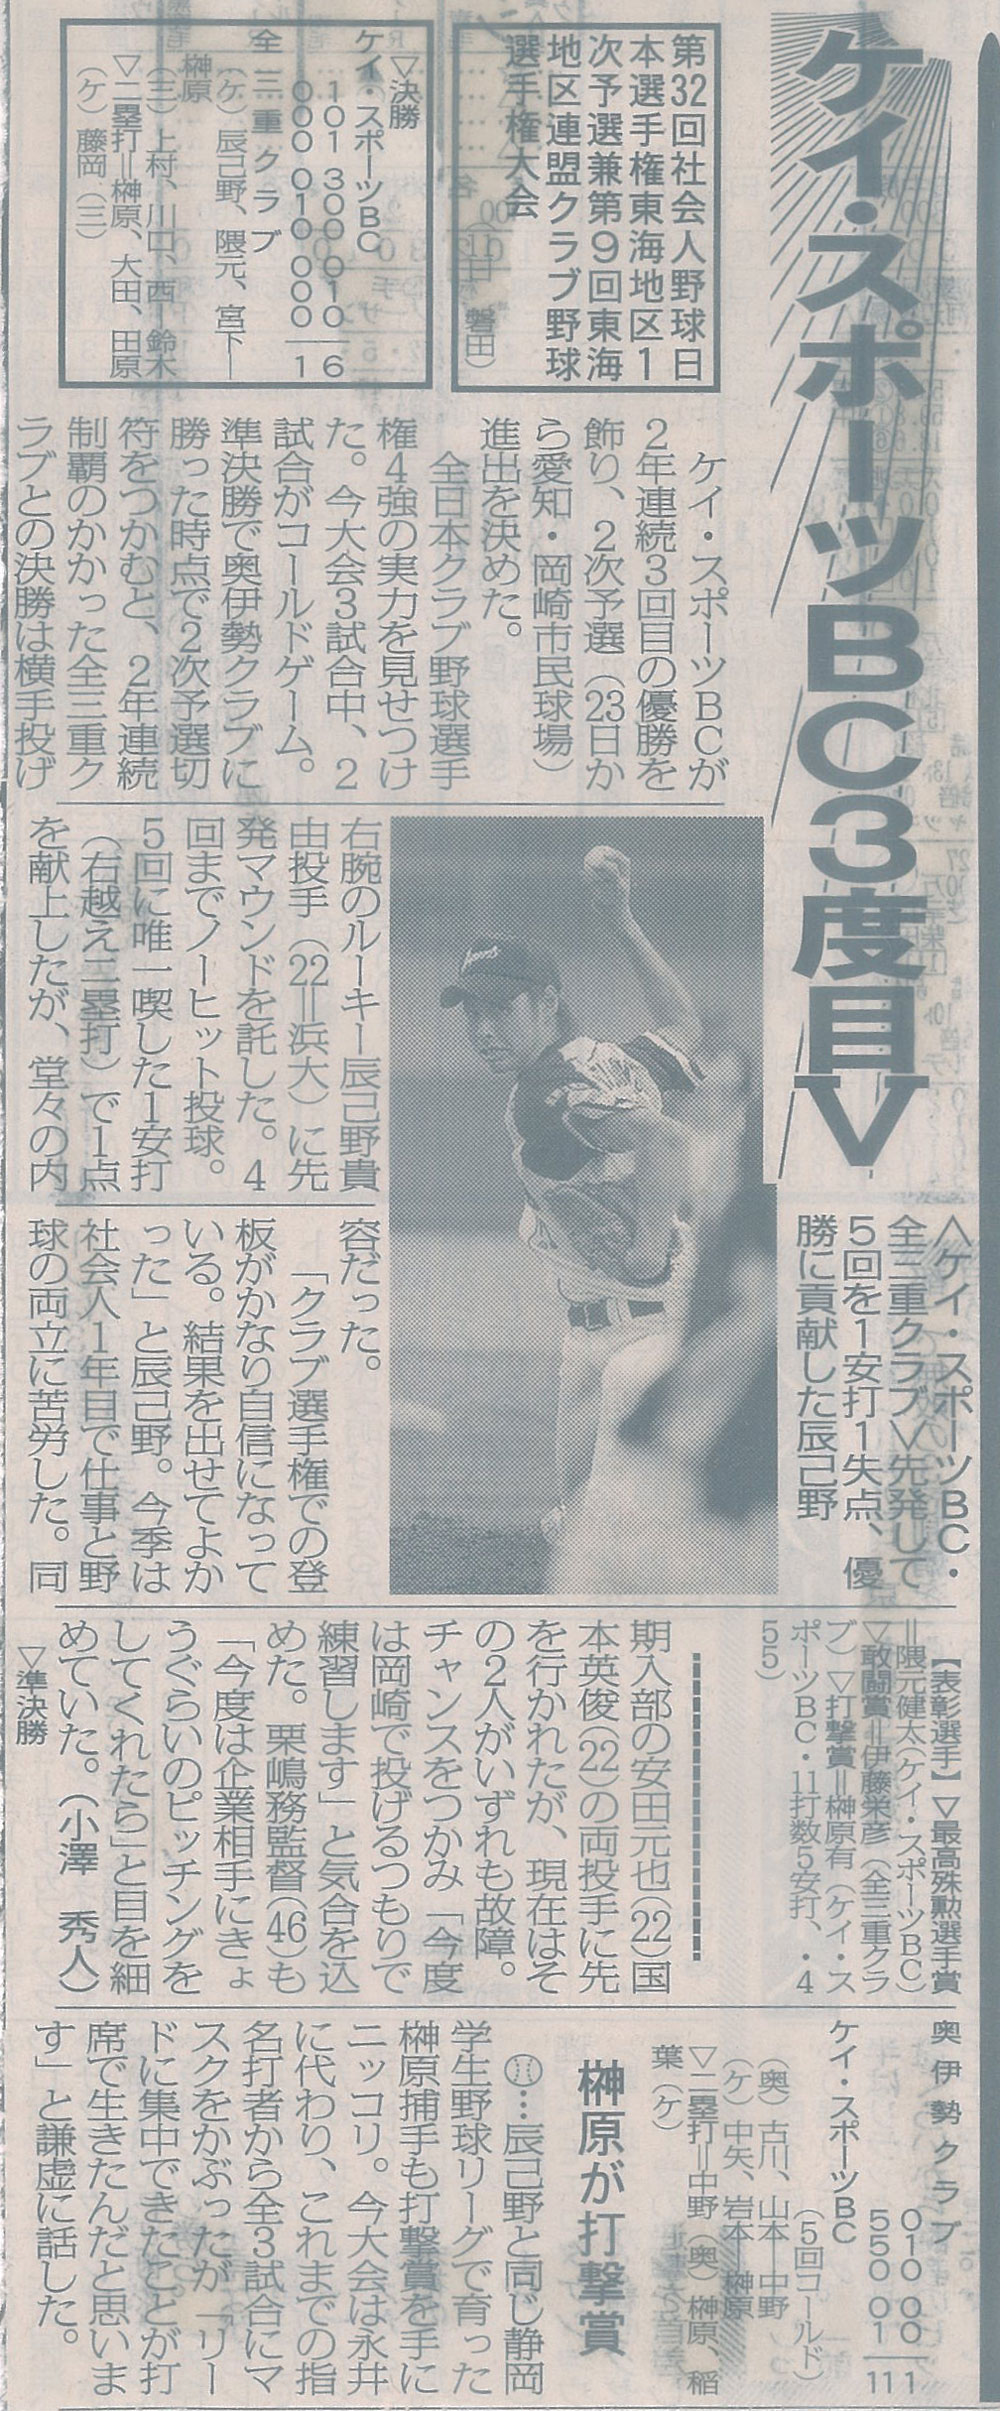 第32回社会人野球日本選手権東海地区1次予選兼第9回東海地区連盟クラブ野球選手権大会